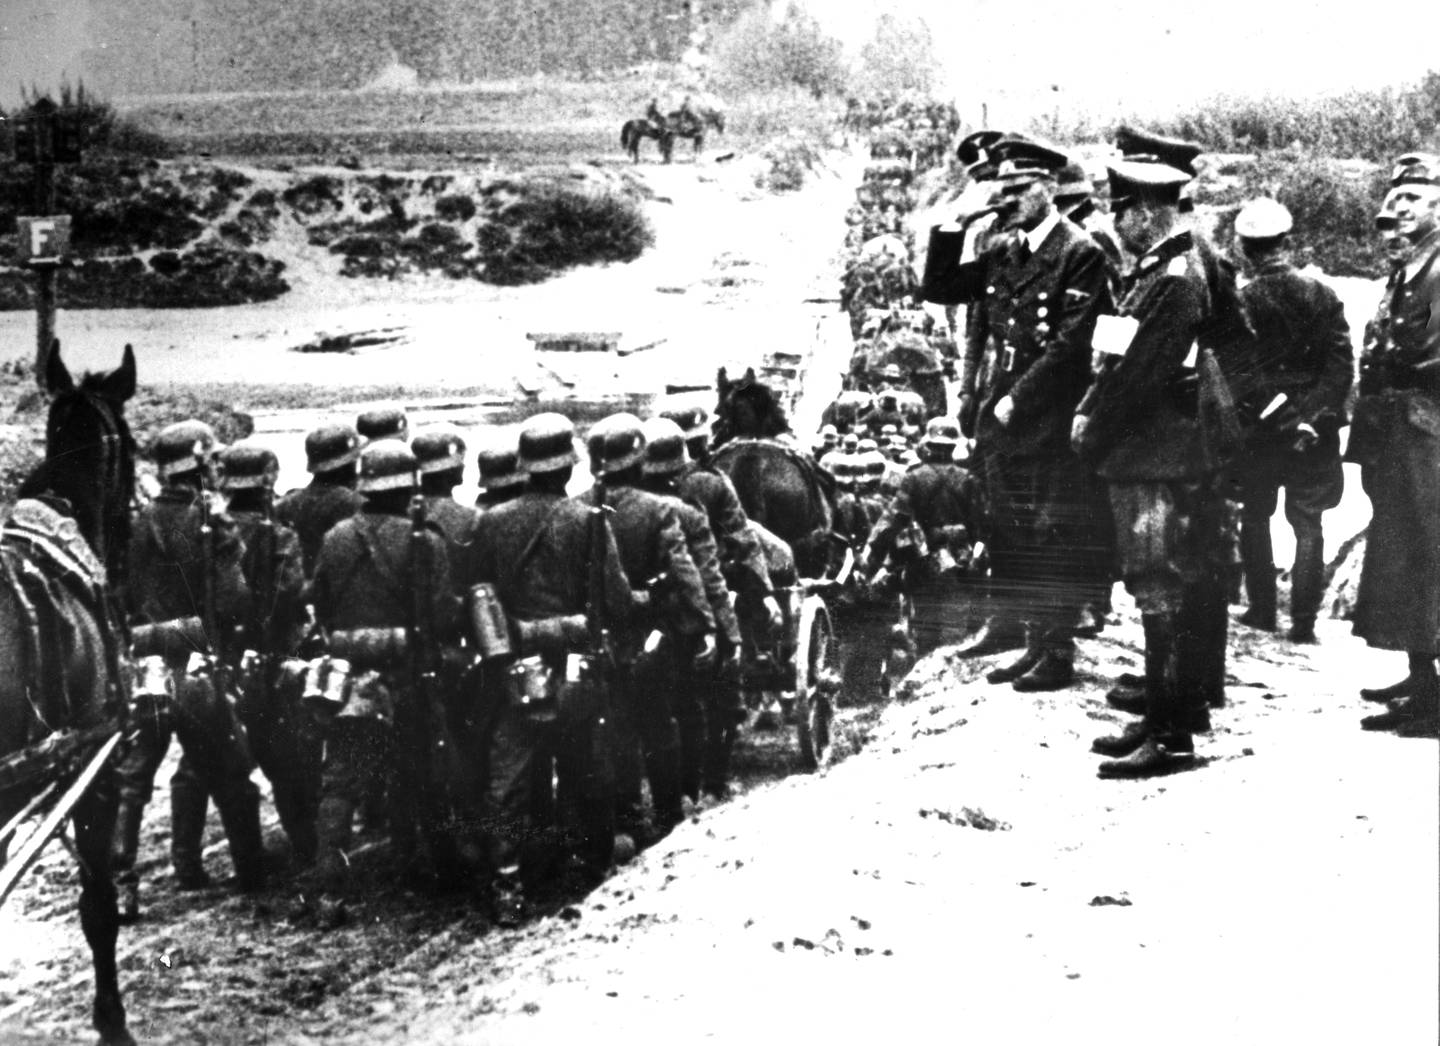 POLEN 1939 tysk felttog i Polen. Adolf Hitler på inspeksjon av de tyske troppene.
Foto: NTB / Arkiv